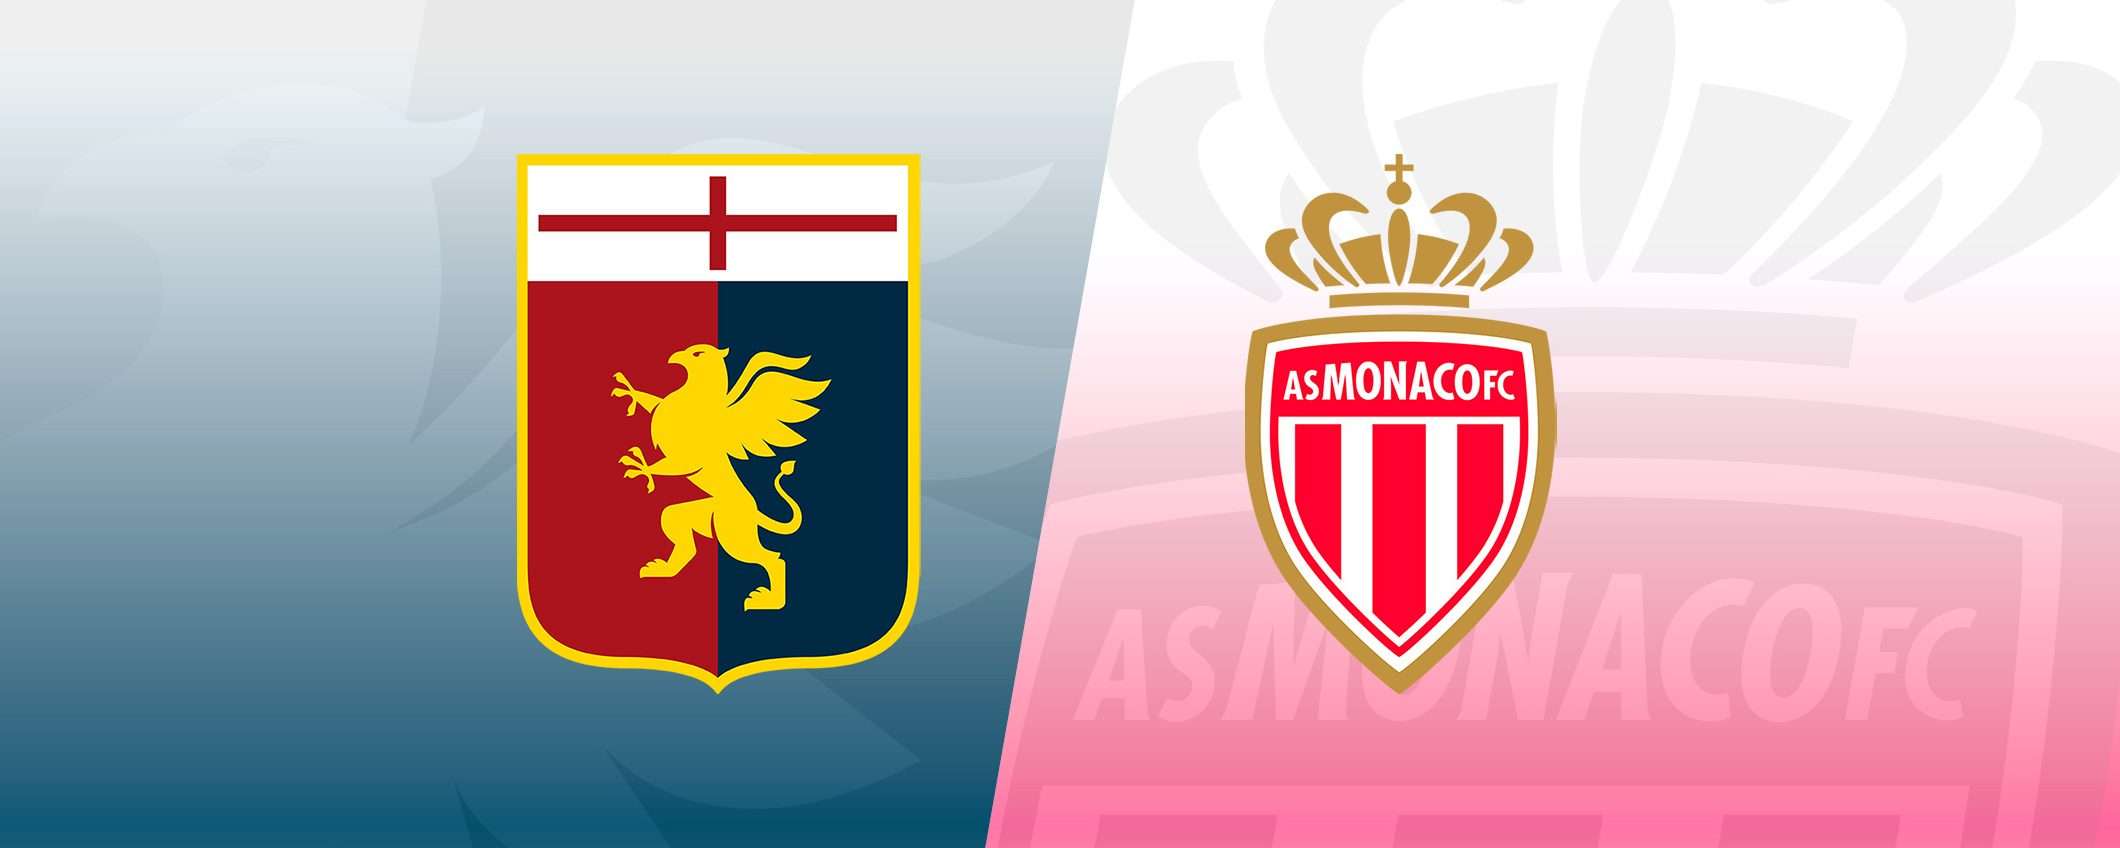 Come vedere Genoa-Monaco in streaming